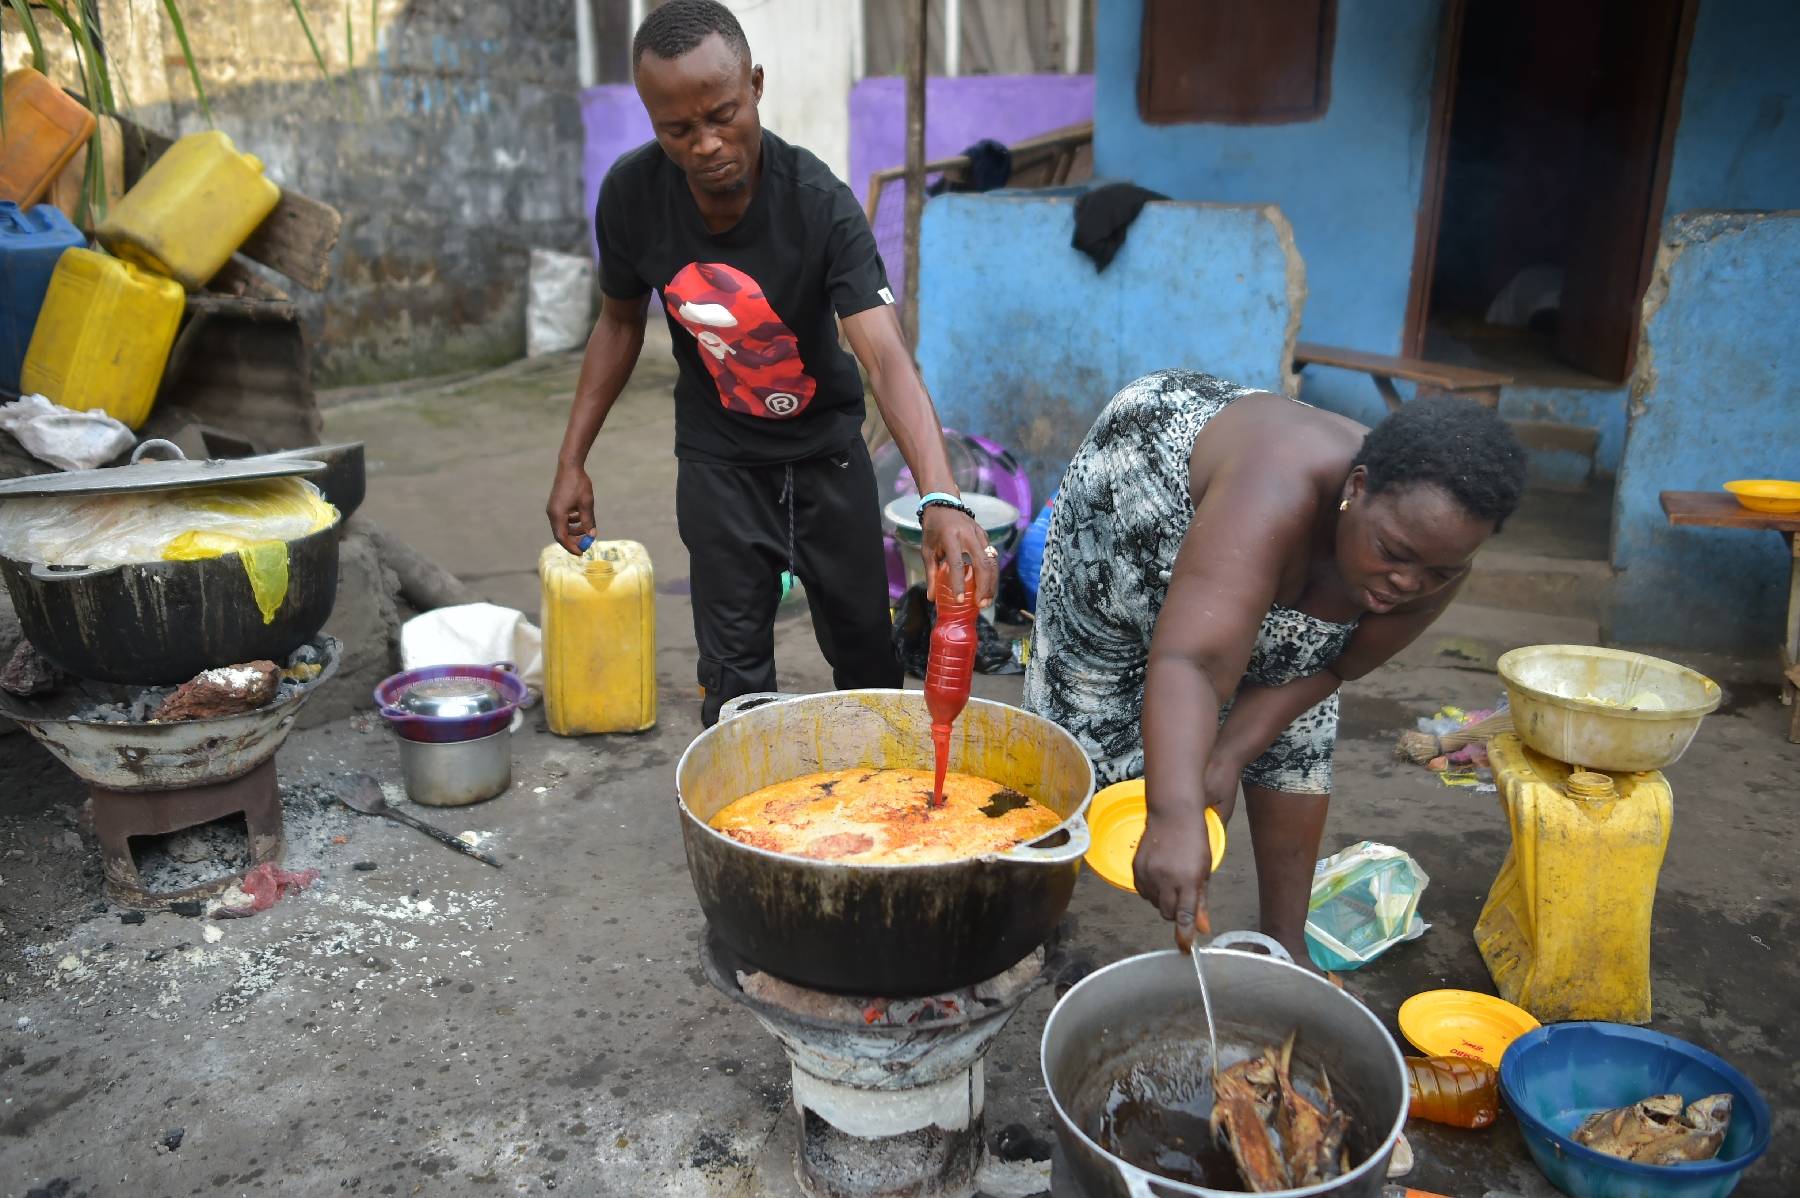 A Freetown, l'inflation met les pieds dans le plat de la cuisine de rue